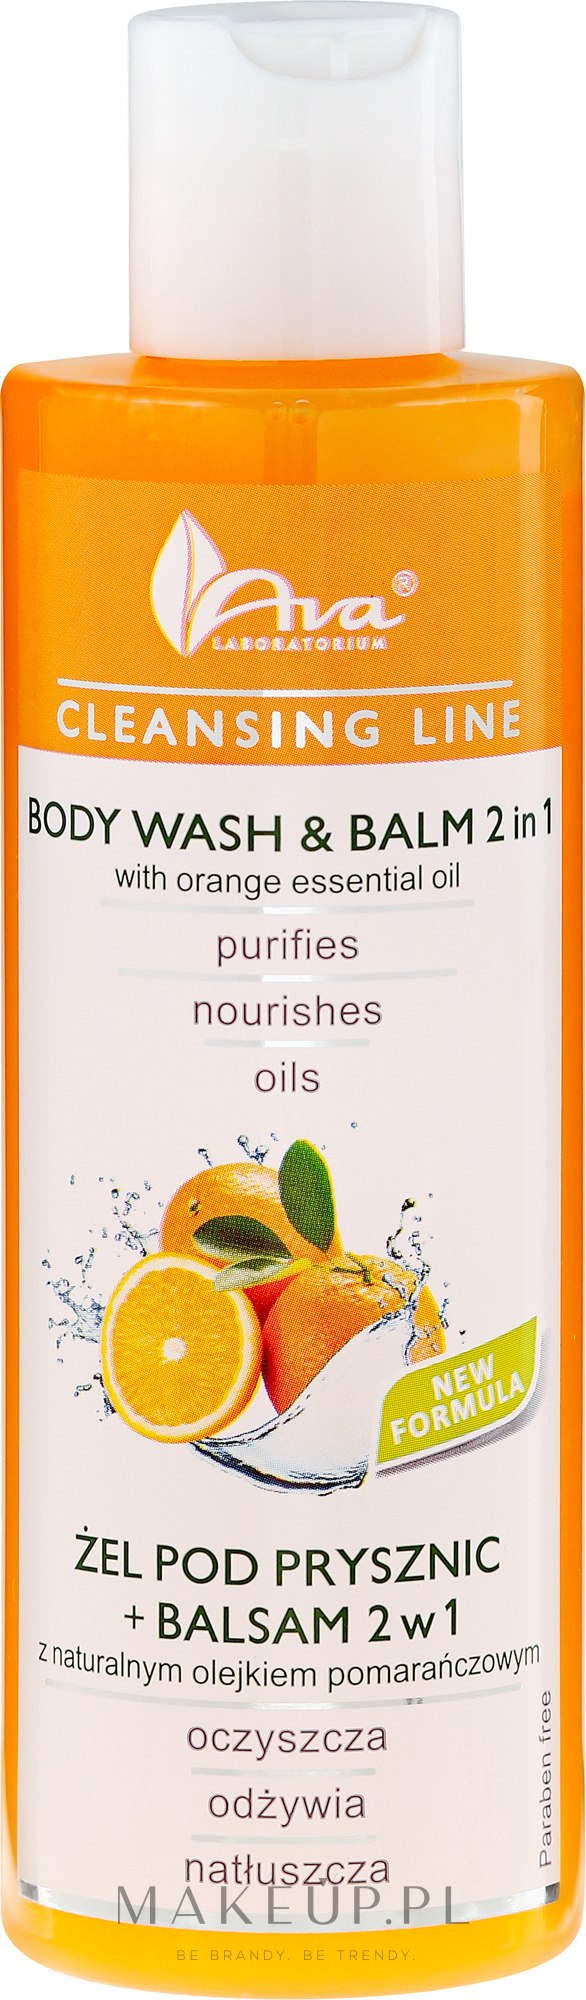 Żel pod prysznic + balsam 2 w 1 z naturalnym olejkiem pomarańczowym - Ava Laboratorium Cleansing Line Body Wash & Balm 2In1 With Orange Essential Oil — Zdjęcie 200 ml